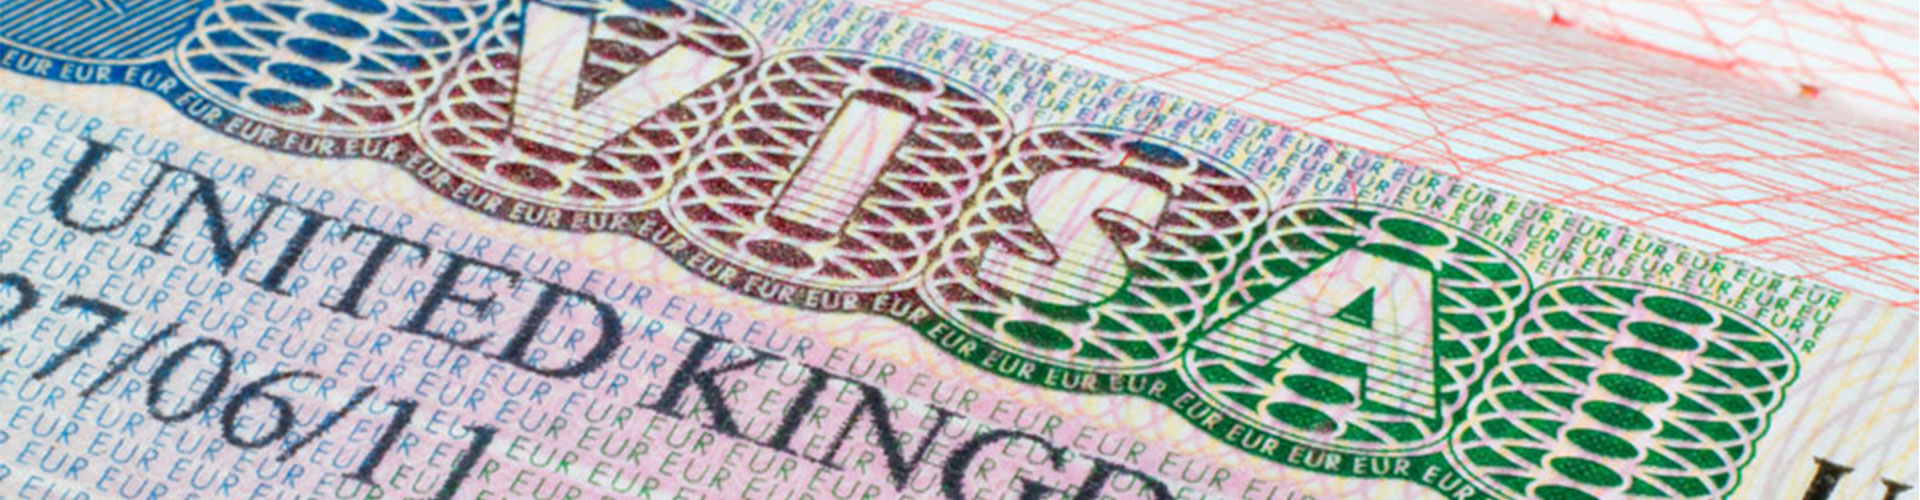 spain non lucrative visa